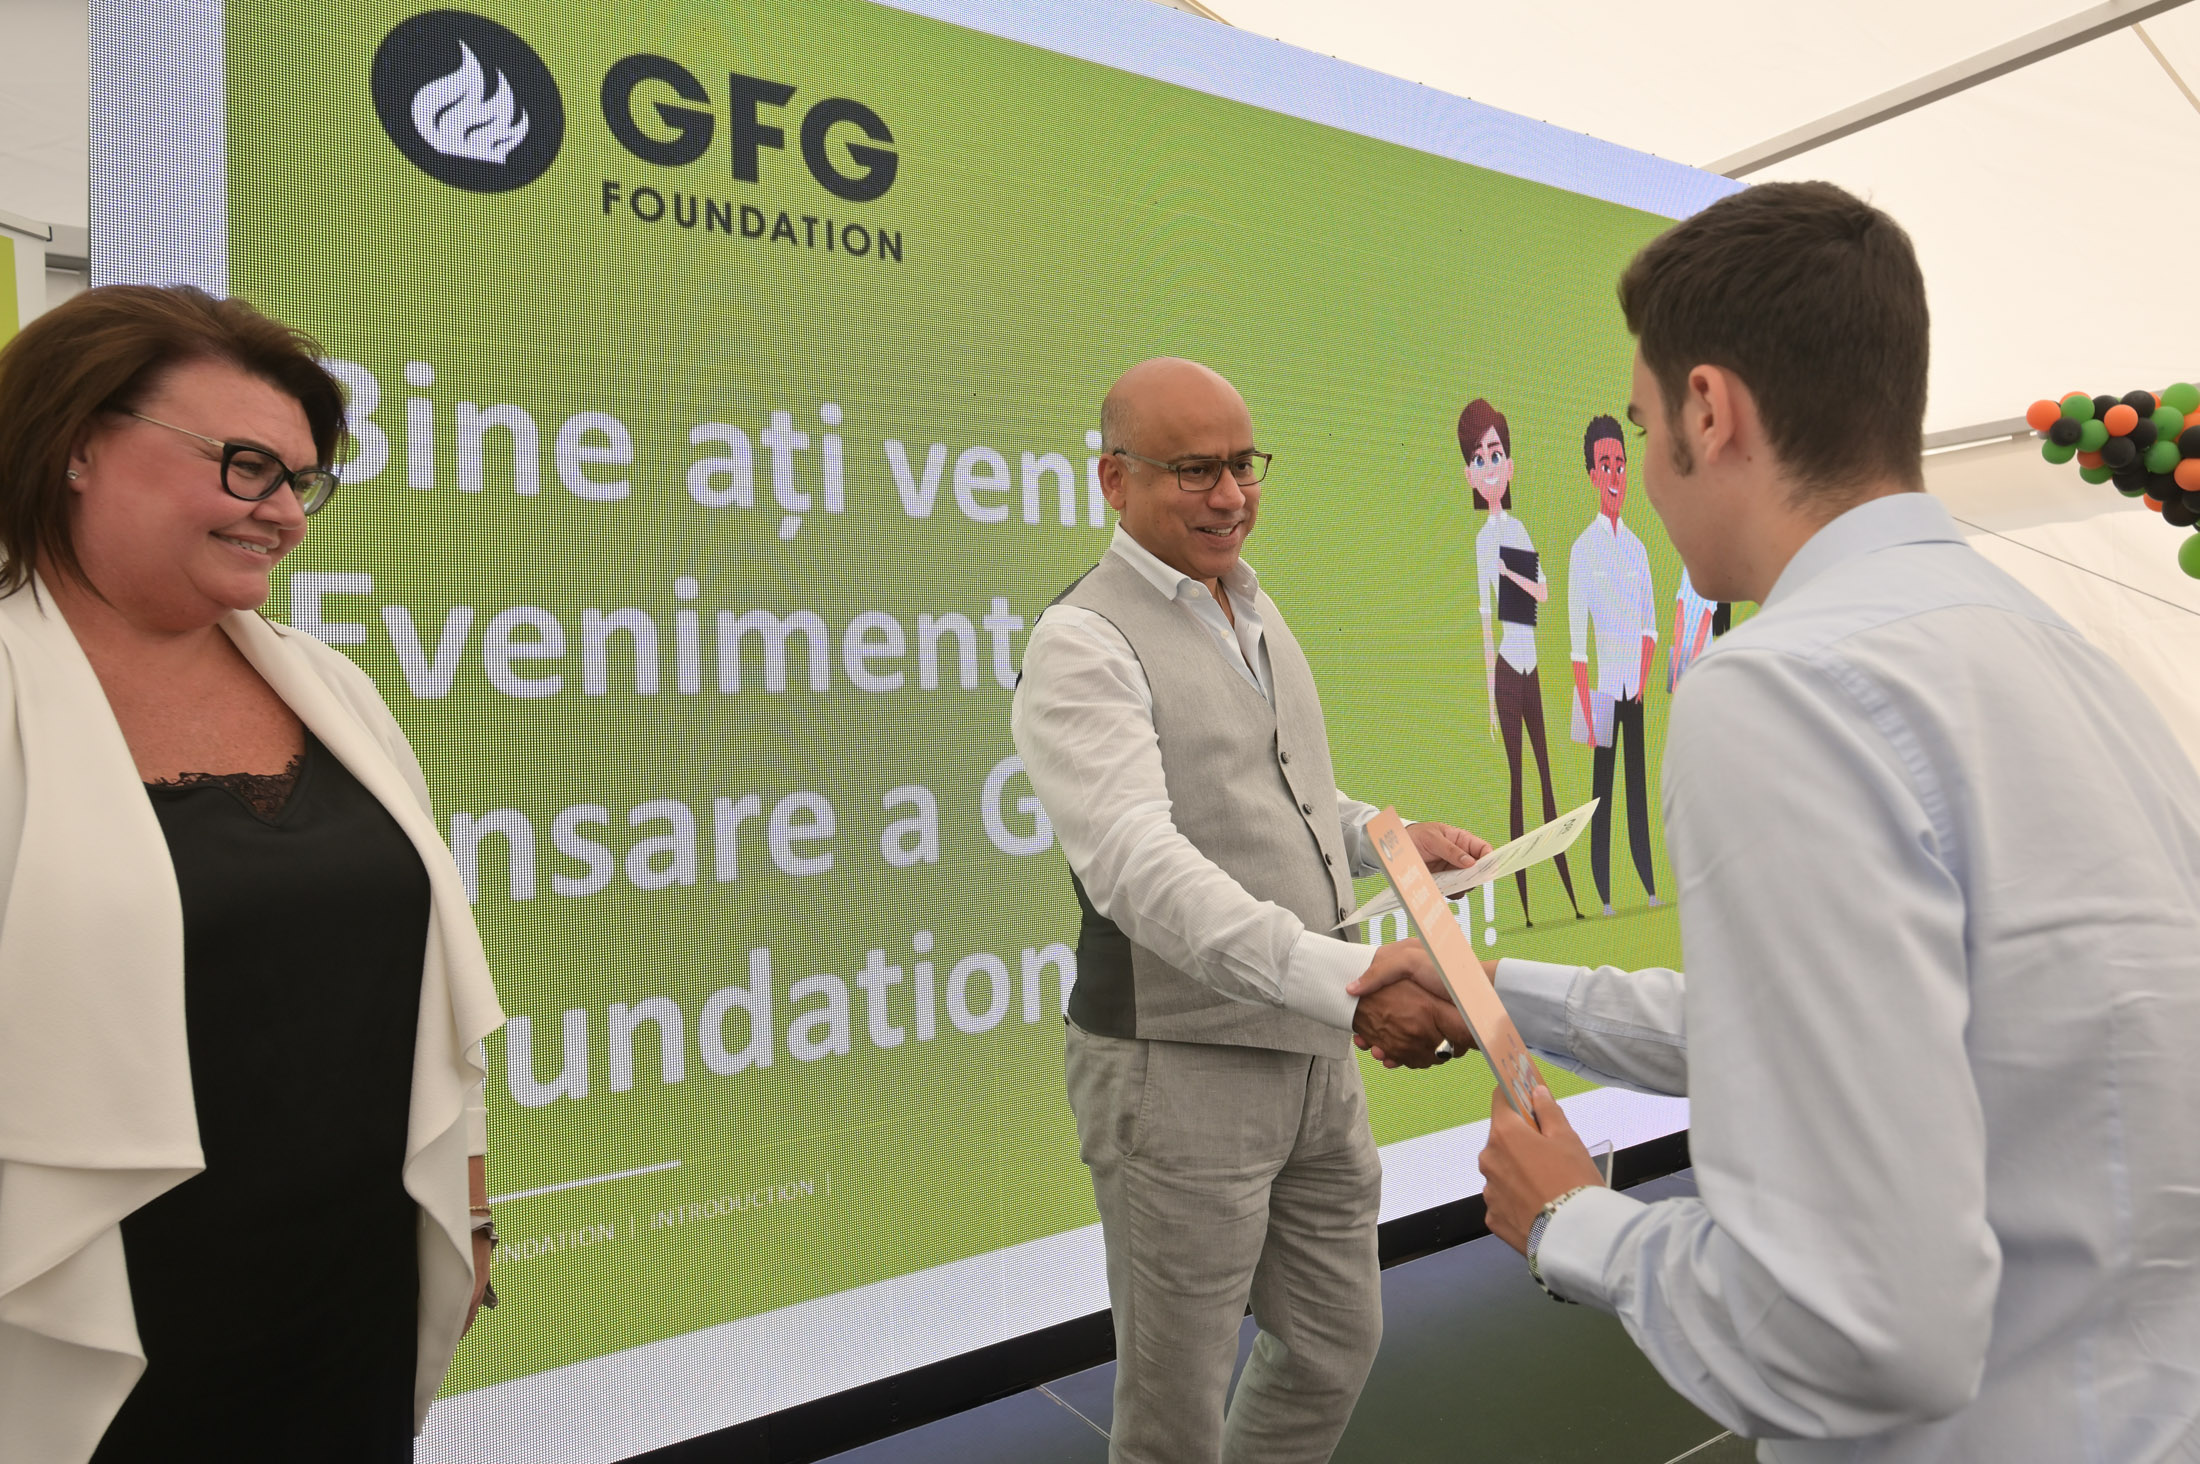 GFG Foundation expands into Romania